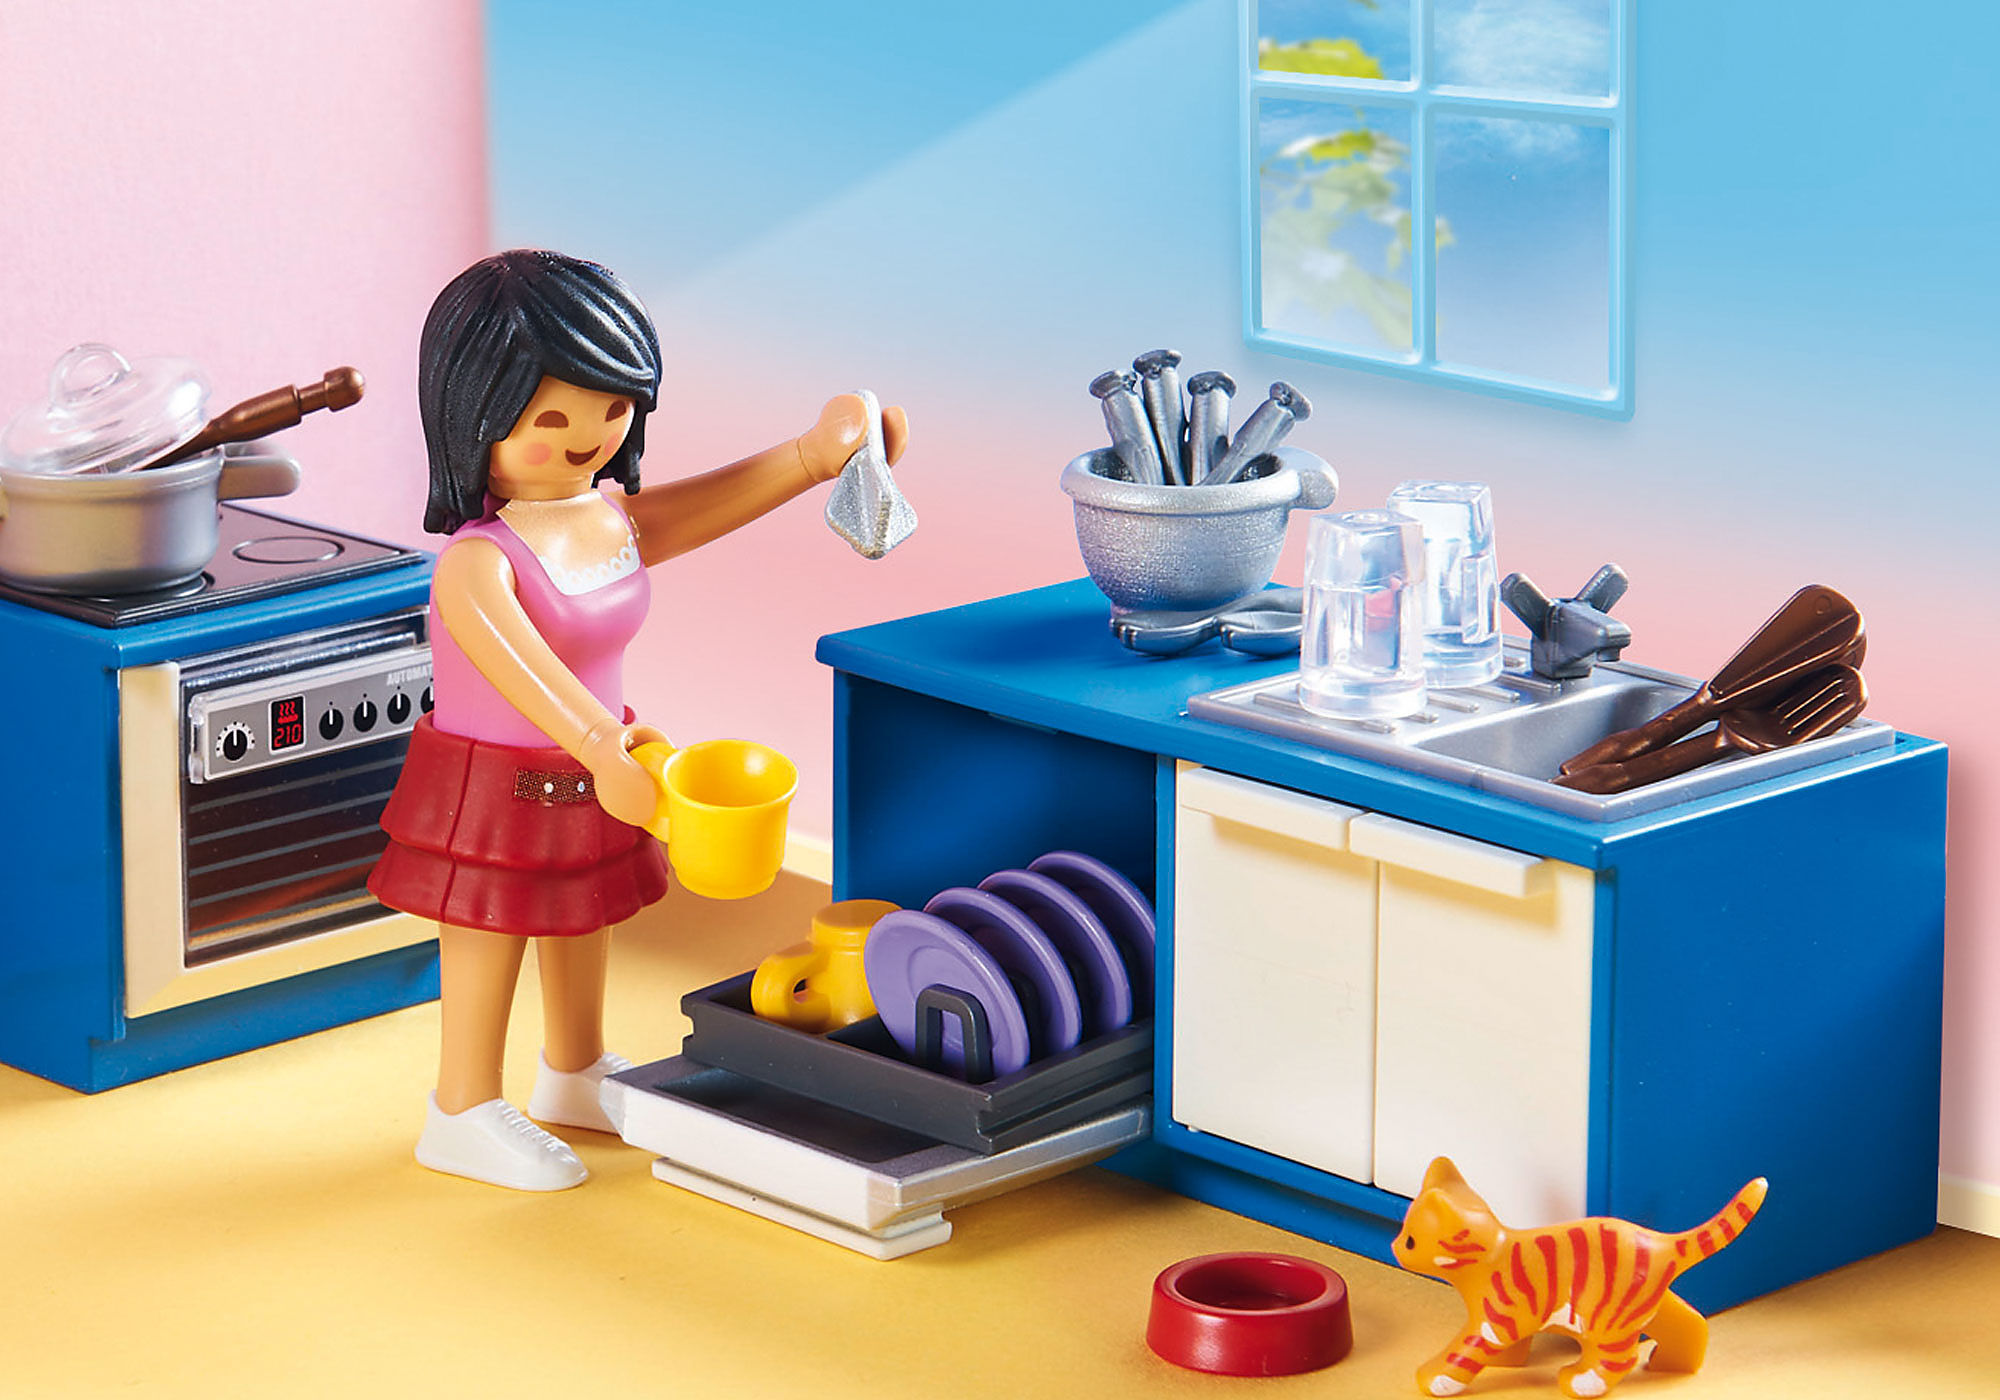 Playmobil 70206 Dollhouse : Cuisine familiale - Jeux et jouets